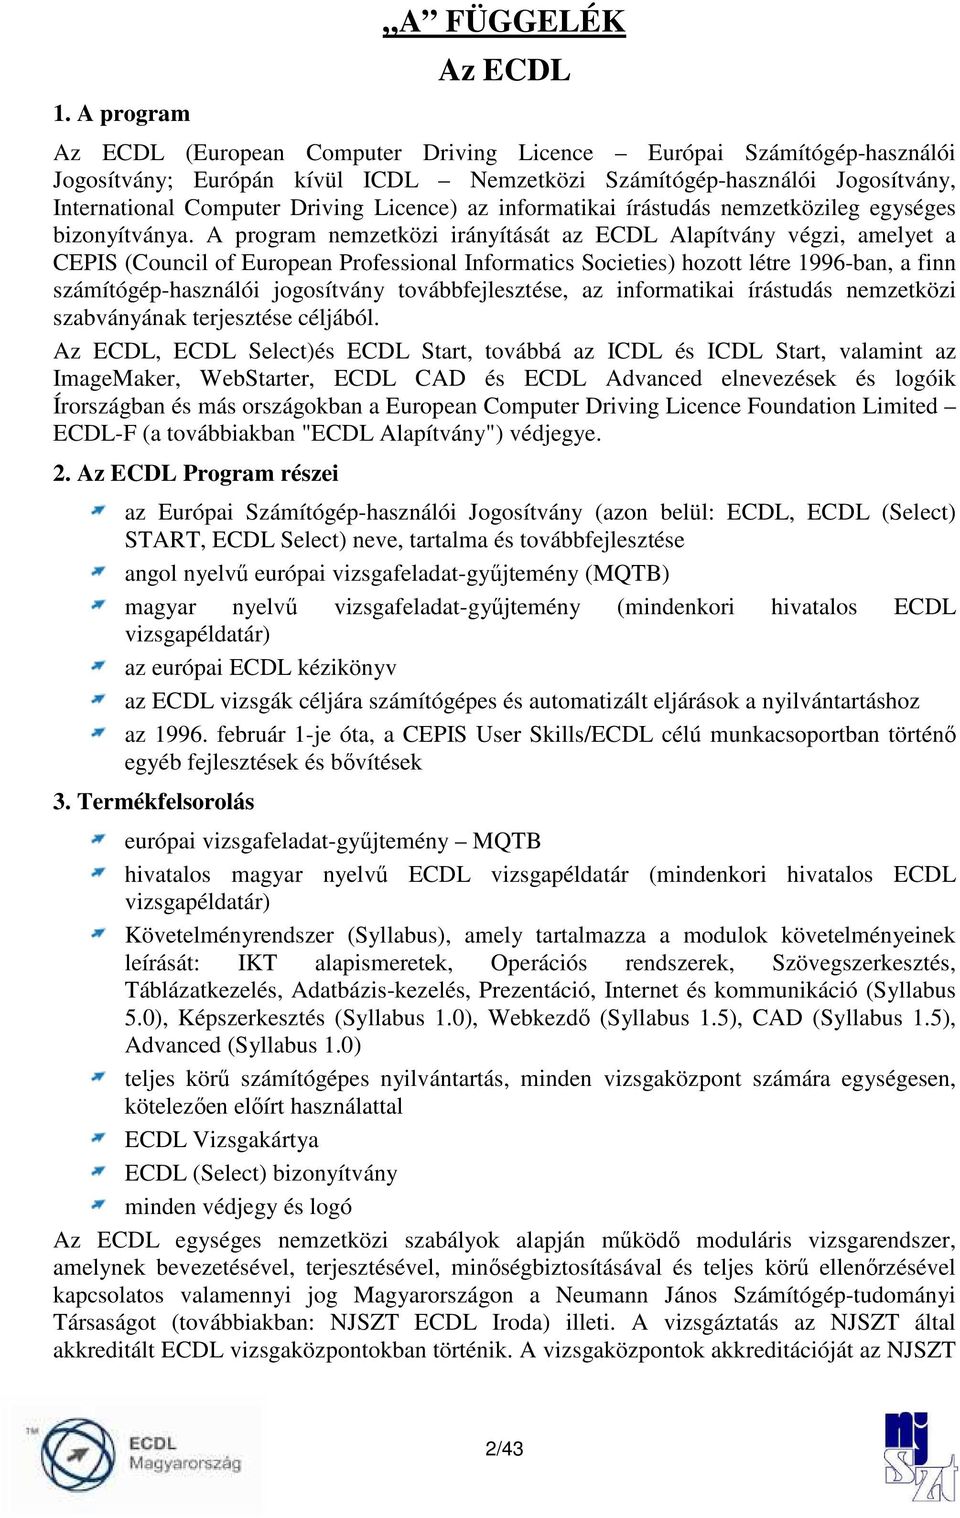 A program nemzetközi irányítását az ECDL Alapítvány végzi, amelyet a CEPIS (Council of European Professional Informatics Societies) hozott létre 1996-ban, a finn számítógép-használói jogosítvány